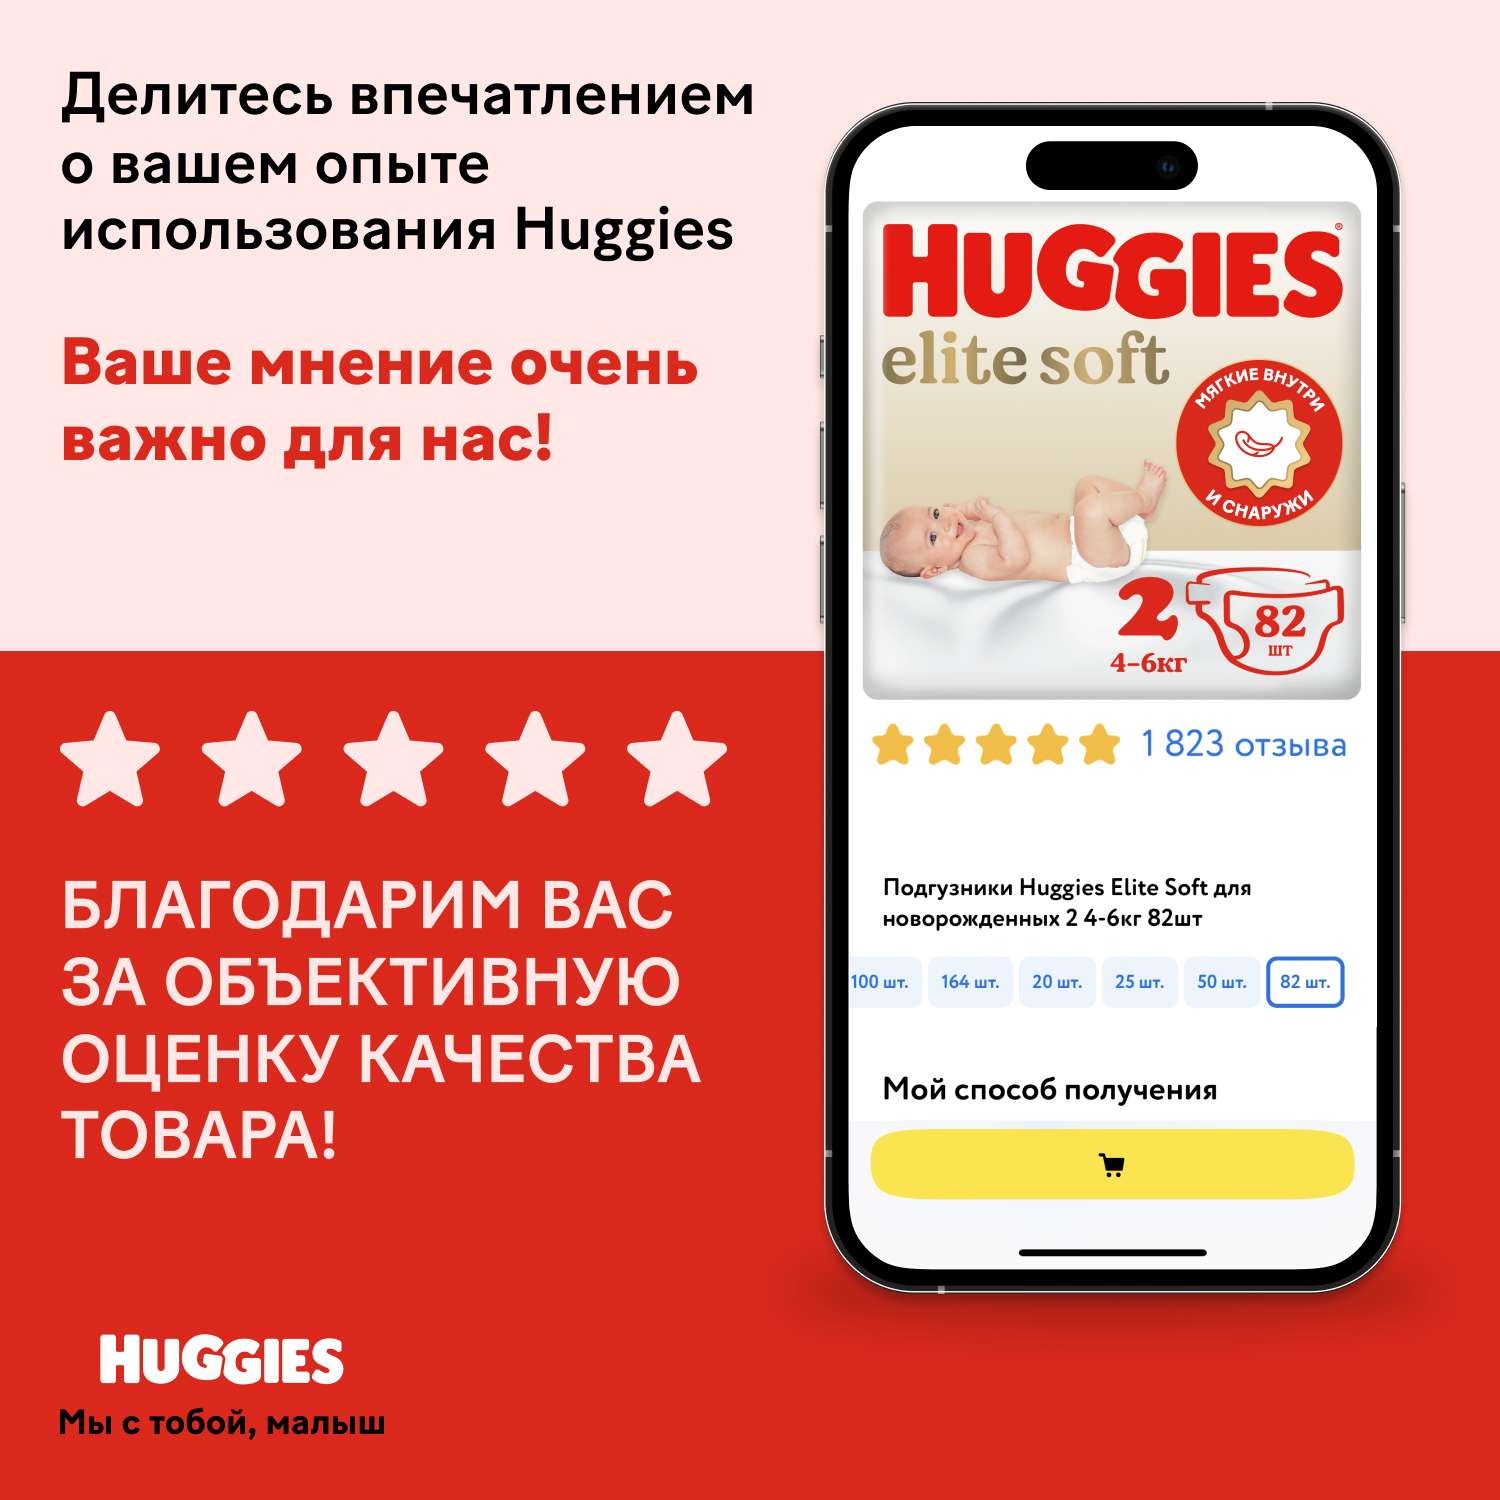 Подгузники Huggies Elite Soft для новорожденных 2 4-6кг 20шт - фото 20